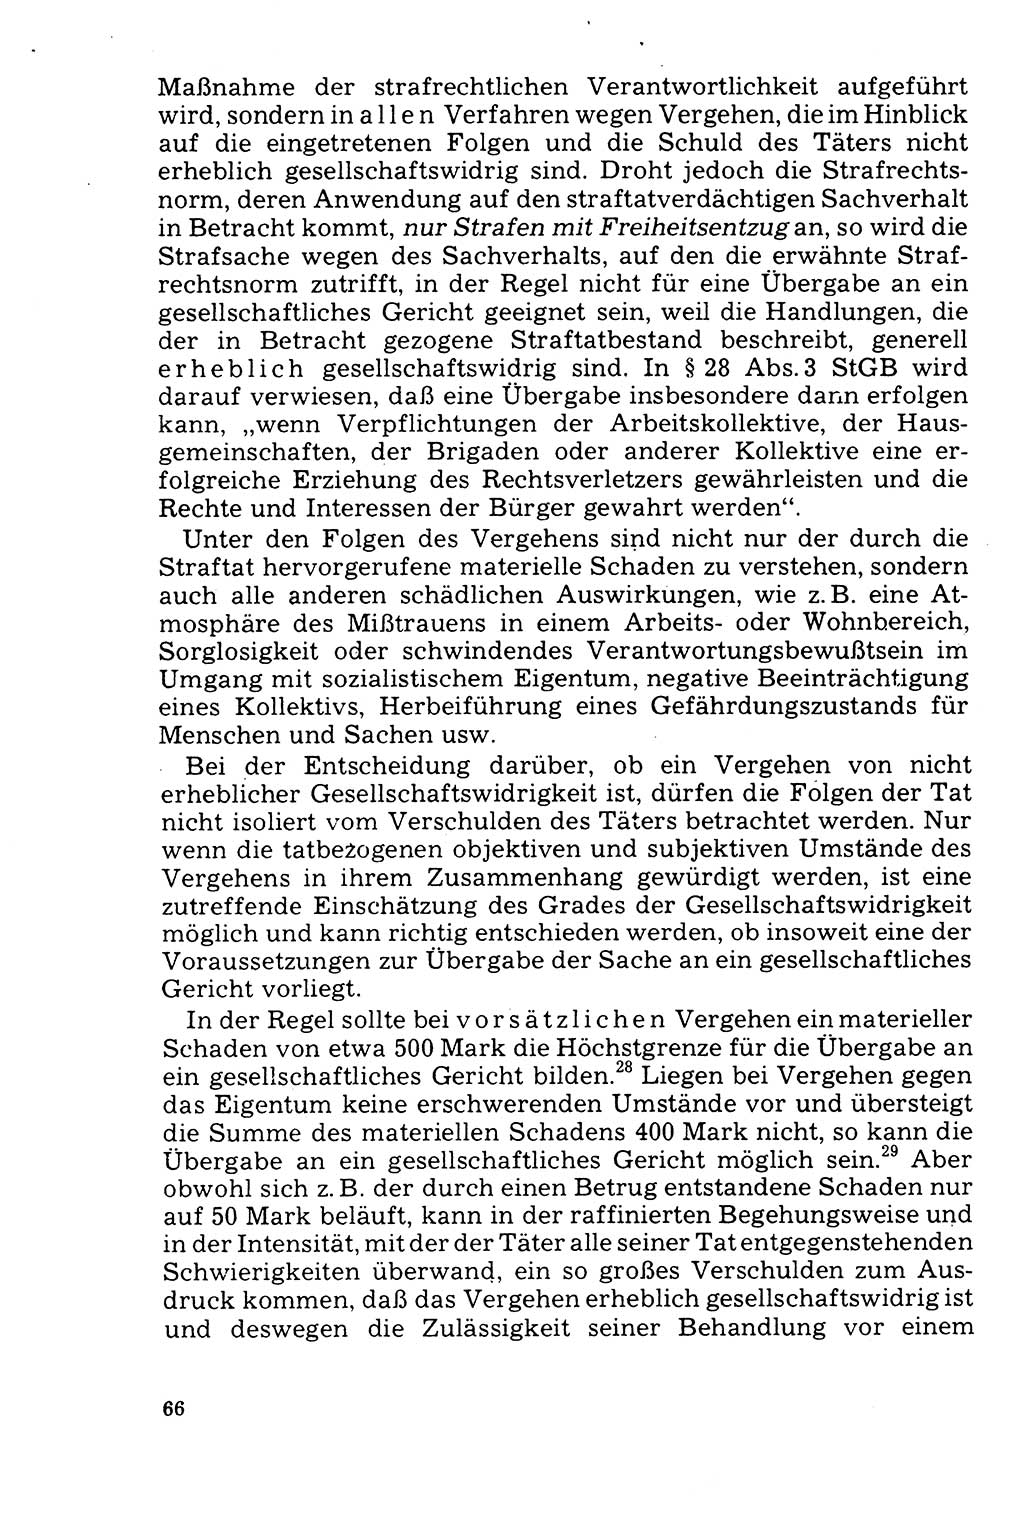 Der Abschluß des Ermittlungsverfahrens [Deutsche Demokratische Republik (DDR)] 1978, Seite 66 (Abschl. EV DDR 1978, S. 66)